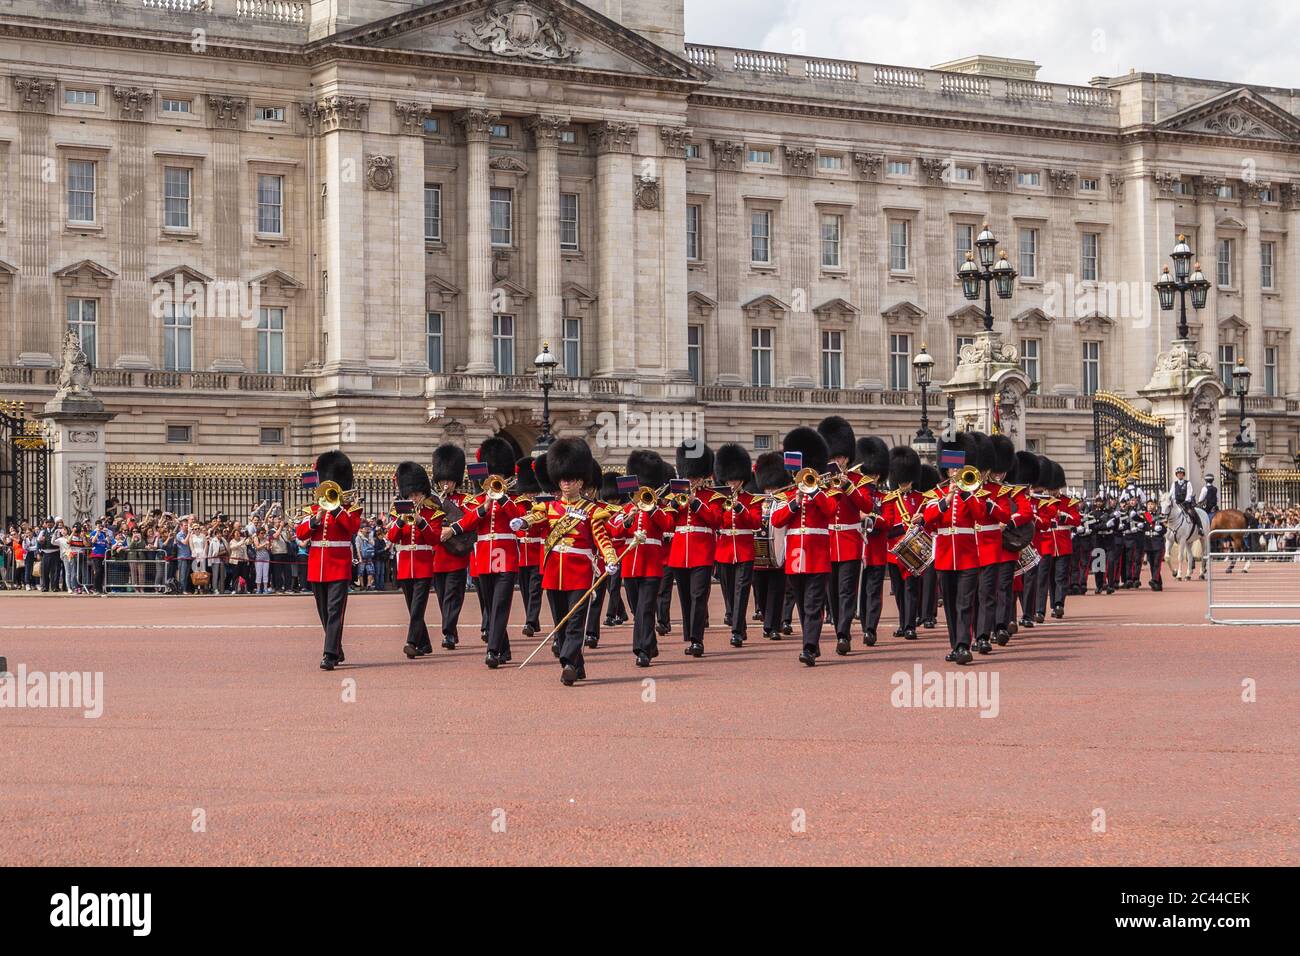 LONDRA, UK - 28 GIUGNO 2016: Supporto musicale della Regimental Band durante la cerimonia del Cambio della Guardia a Buckingham Palace in estate. Foto Stock